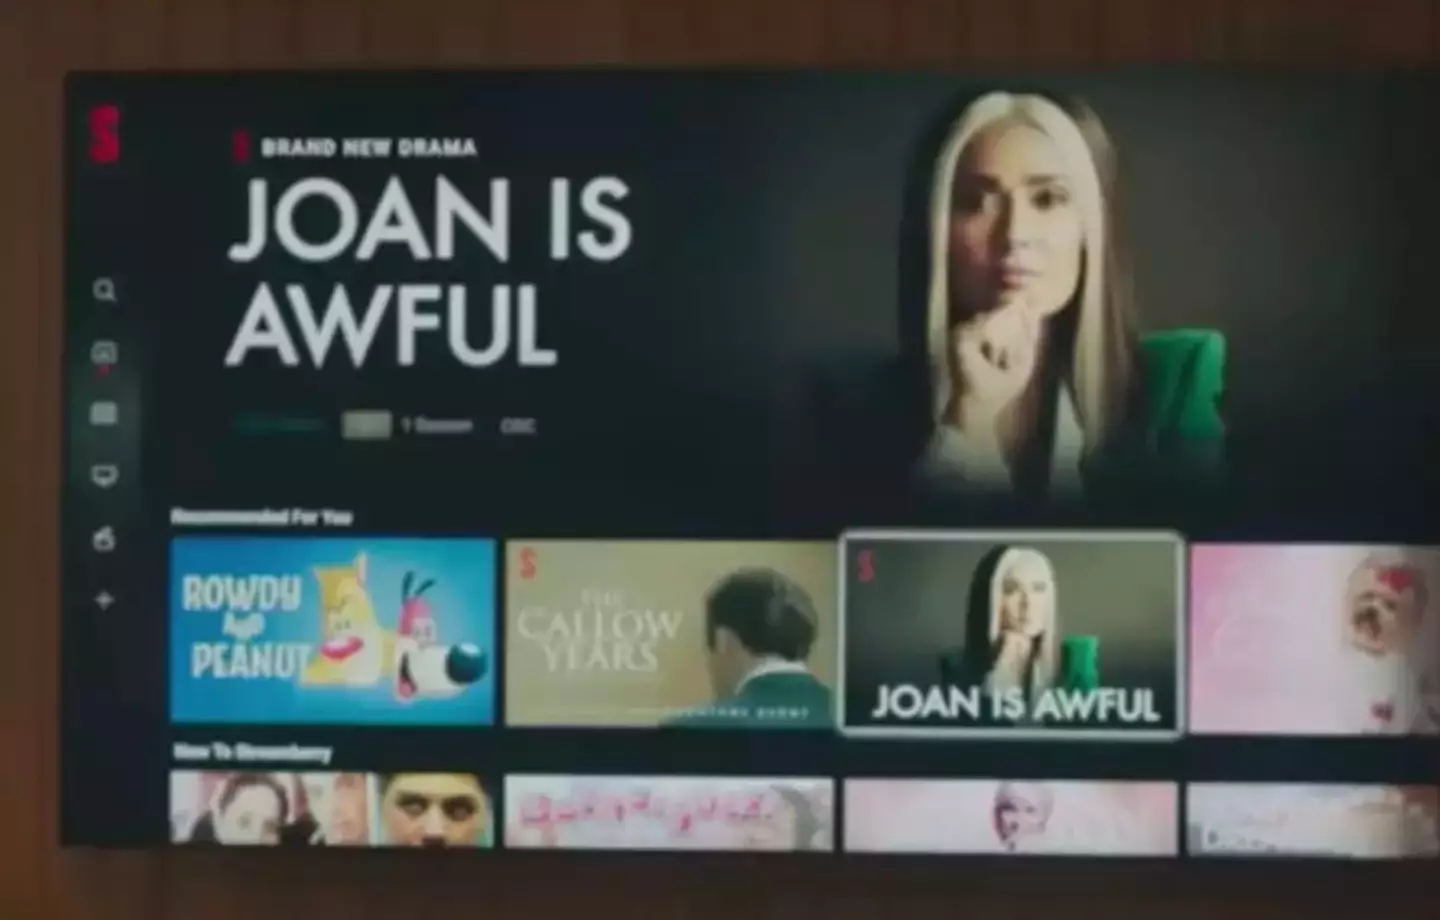 Salma Hayek in 'Joan is awful'.